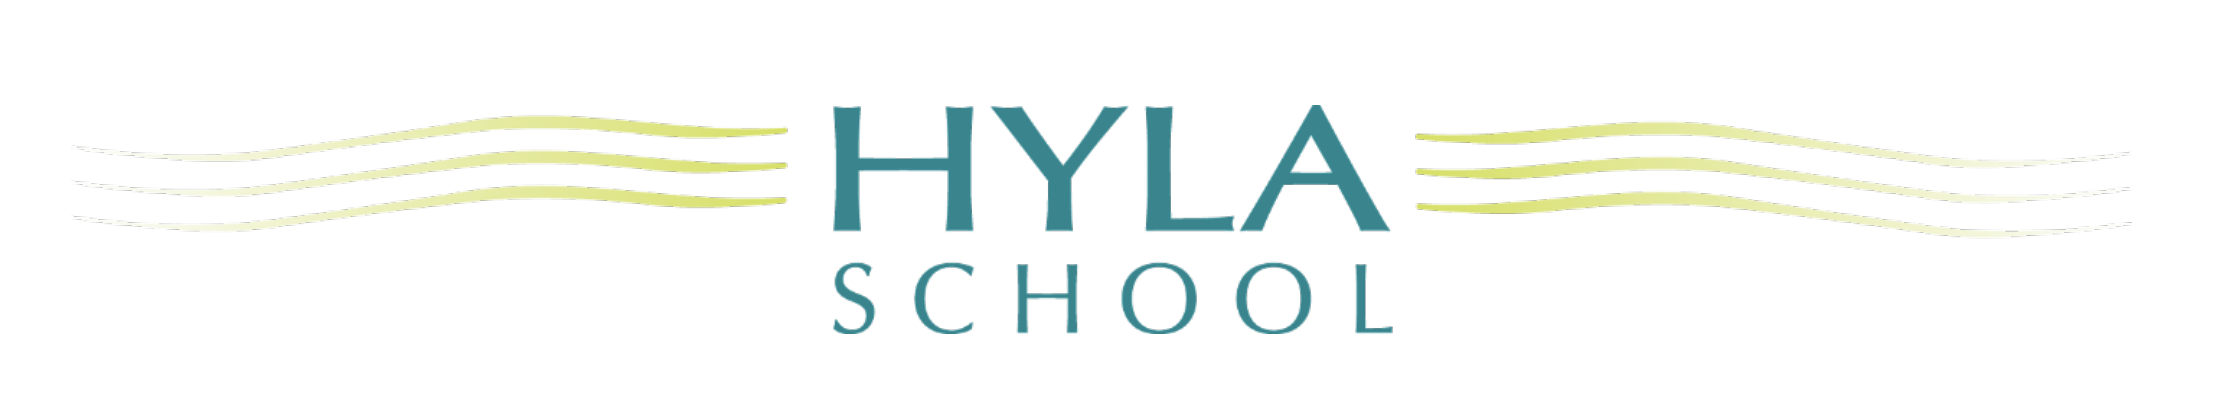 Hyla School logo